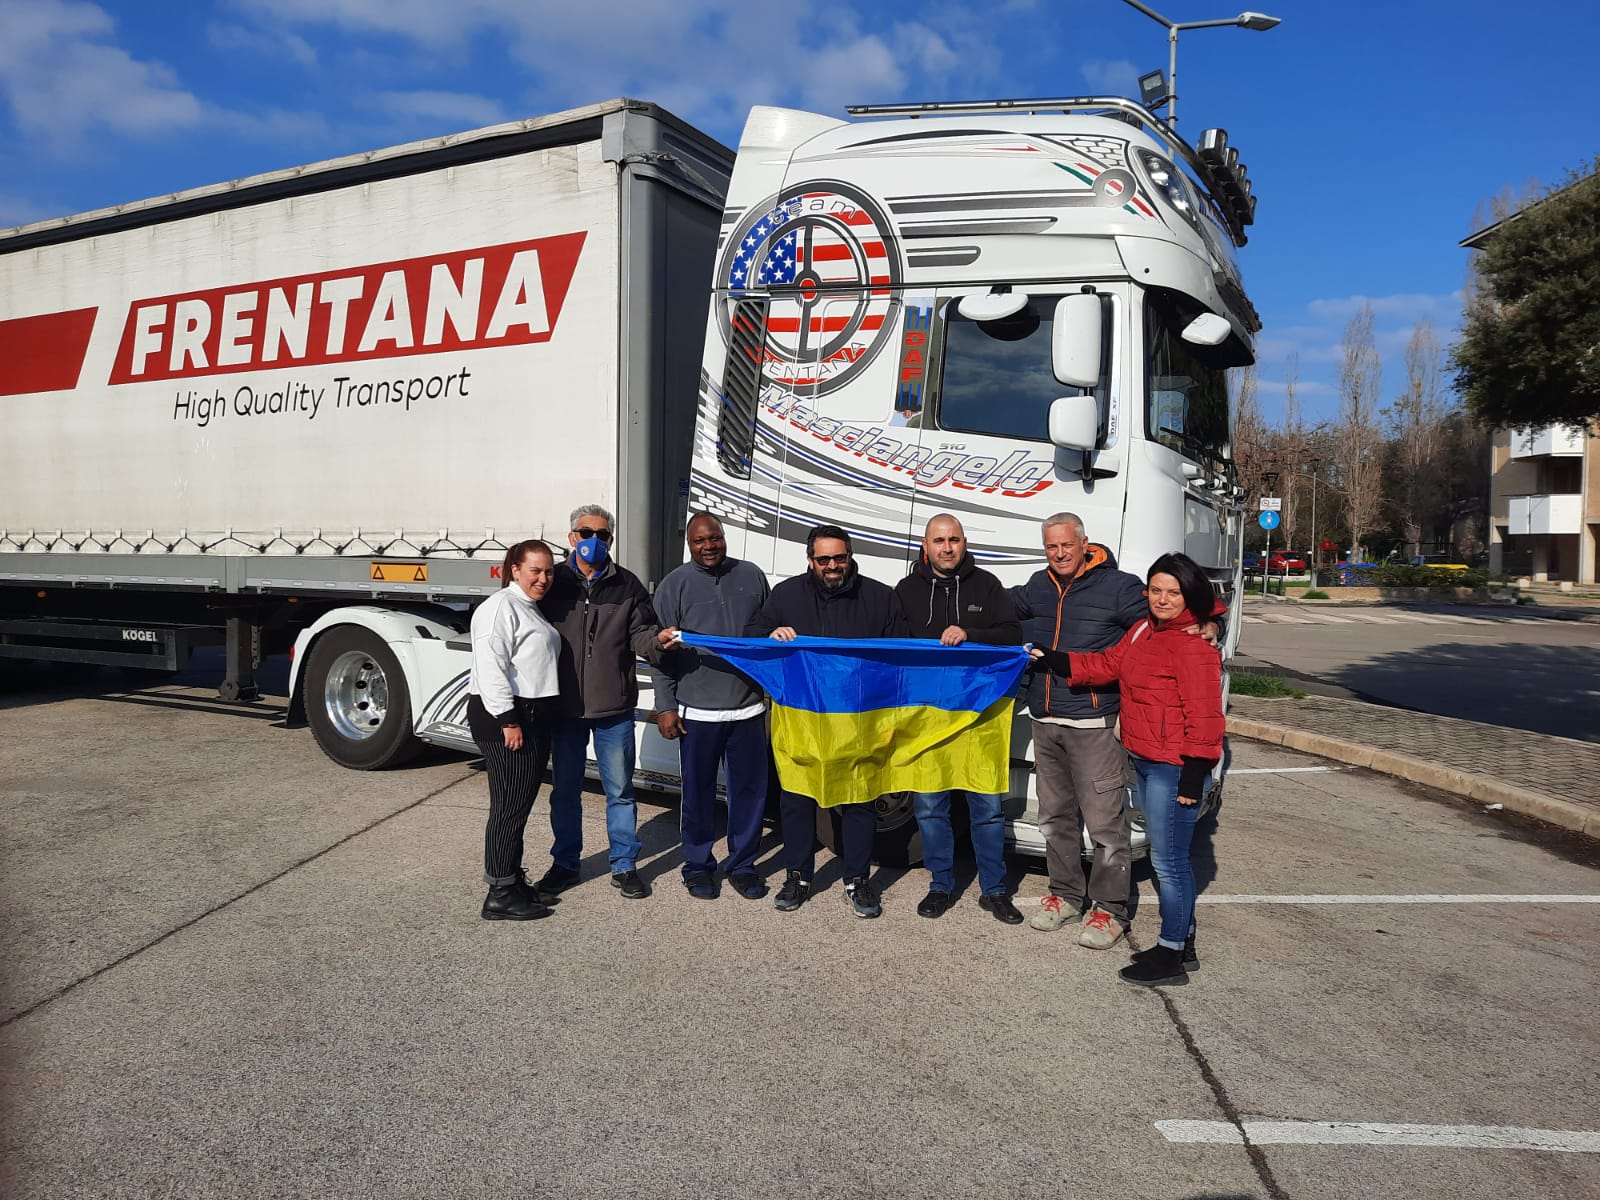 Lanciano si mobilita per aiutare la popolazione Ucraina, partirà questa sera il tir della solidarietà carico di beni di prima necessità